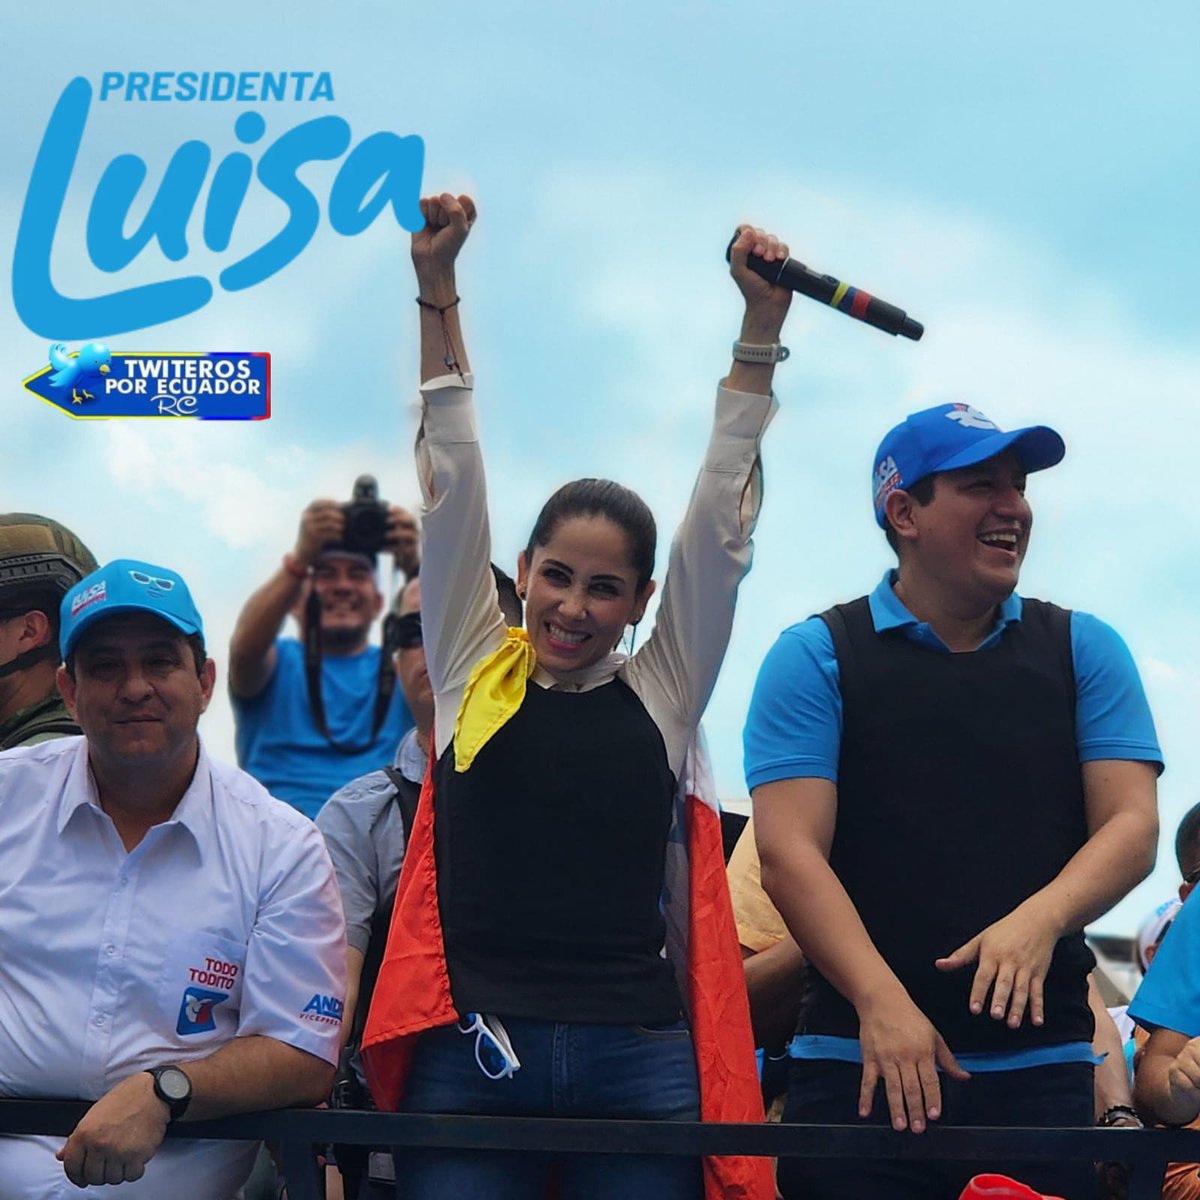 Nuestro querido binomio @LuisaGonzalezEc y @ecuarauz  en #Manabí

  #EcuadorVencerá 🇪🇨 #LuisaPresidenta
#LuisaEsLaRespuesta #TuiterosConLaRC5